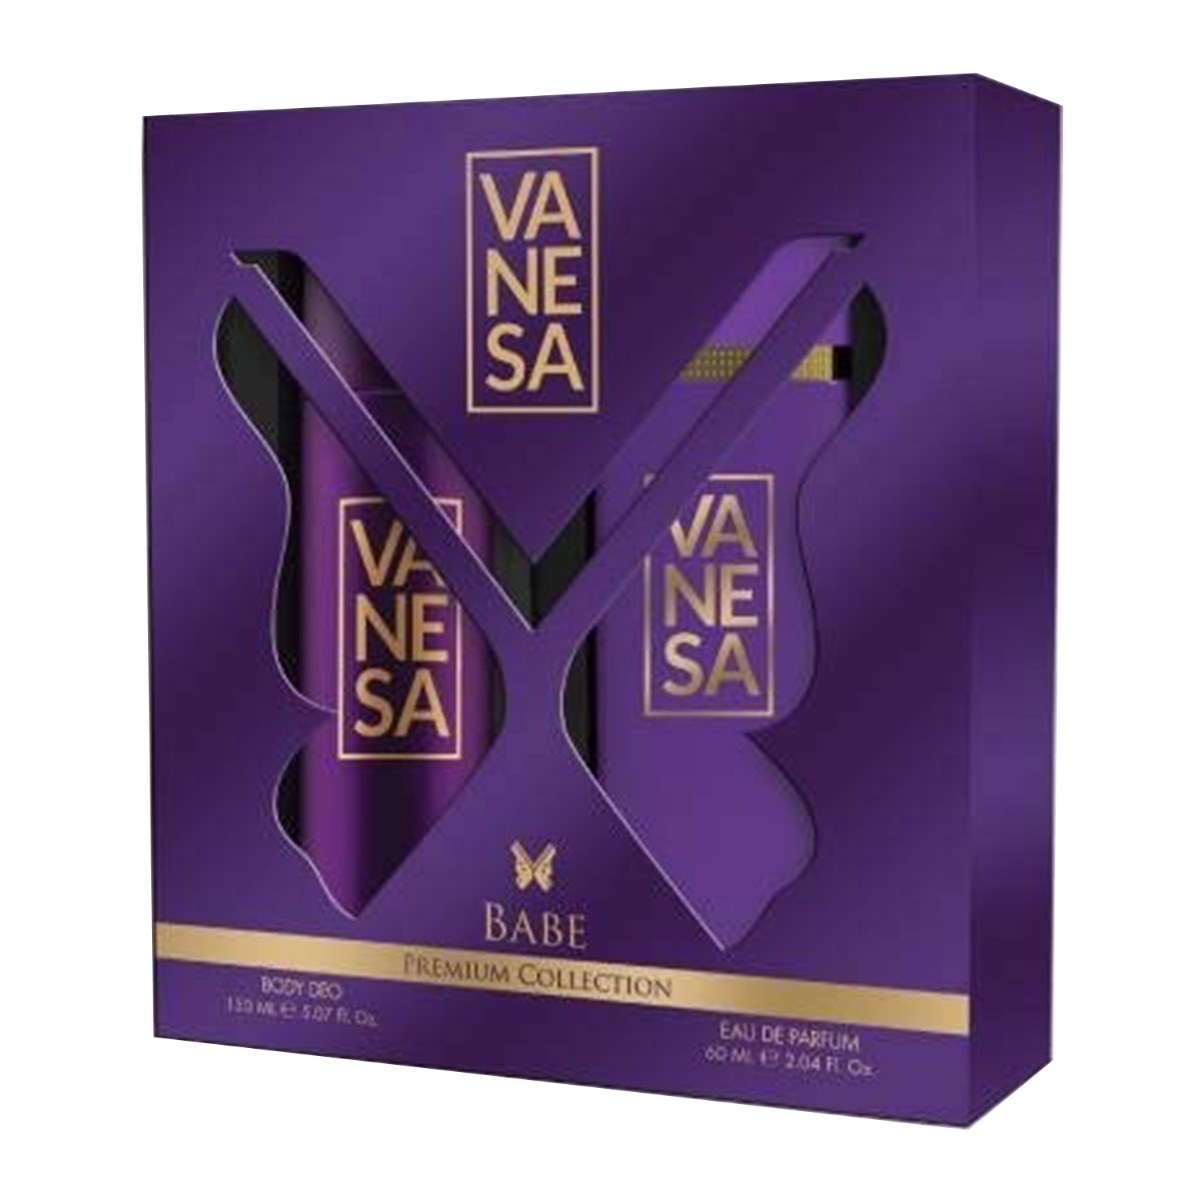 Vanesa Babe Gift Pack For Women, Combo